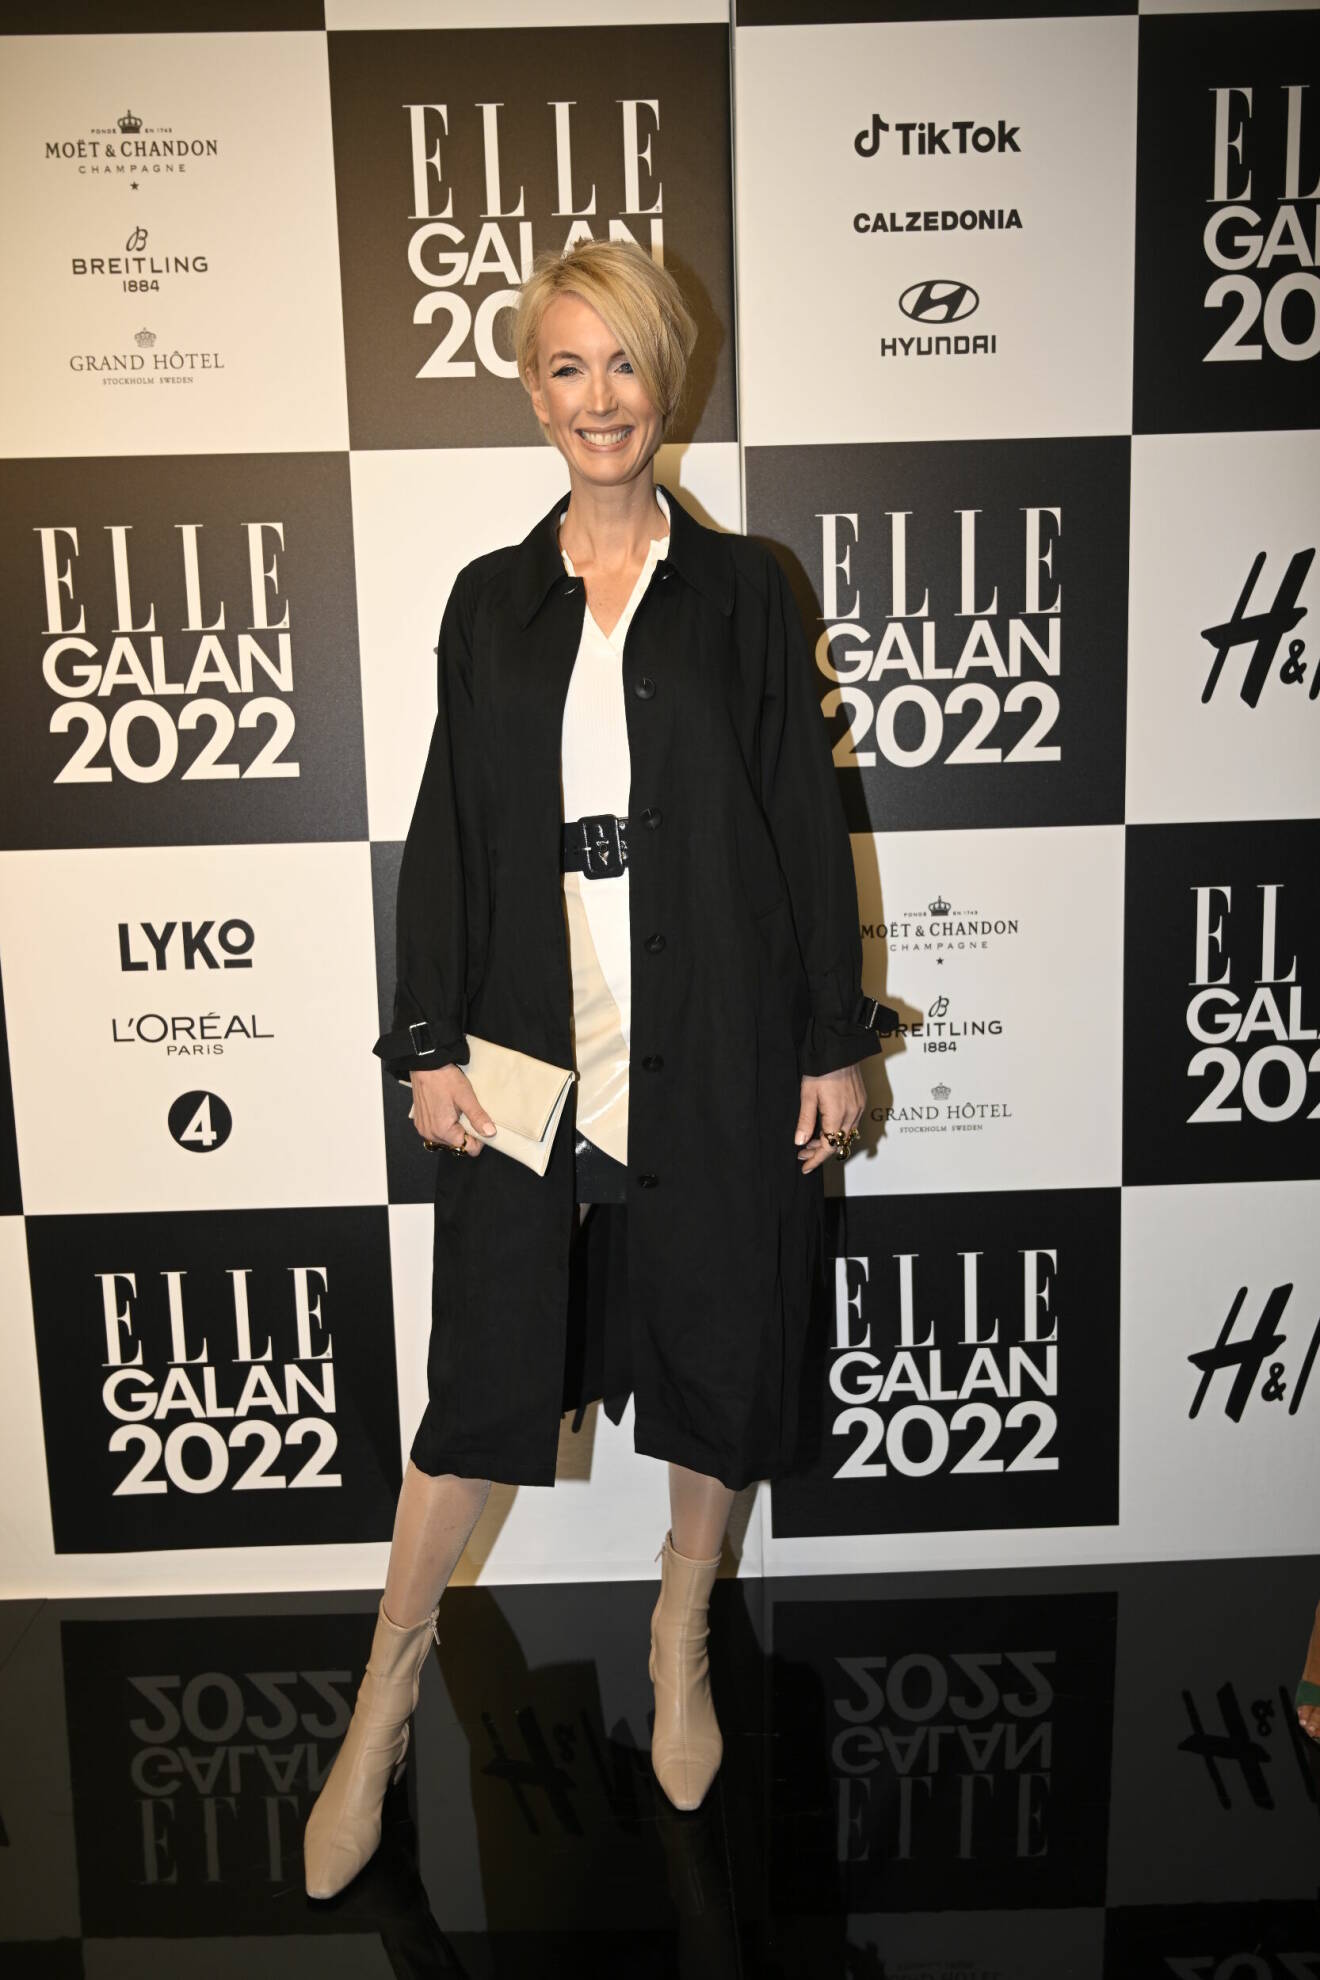 ELLE-galan 2022 Jenny Strömstedt